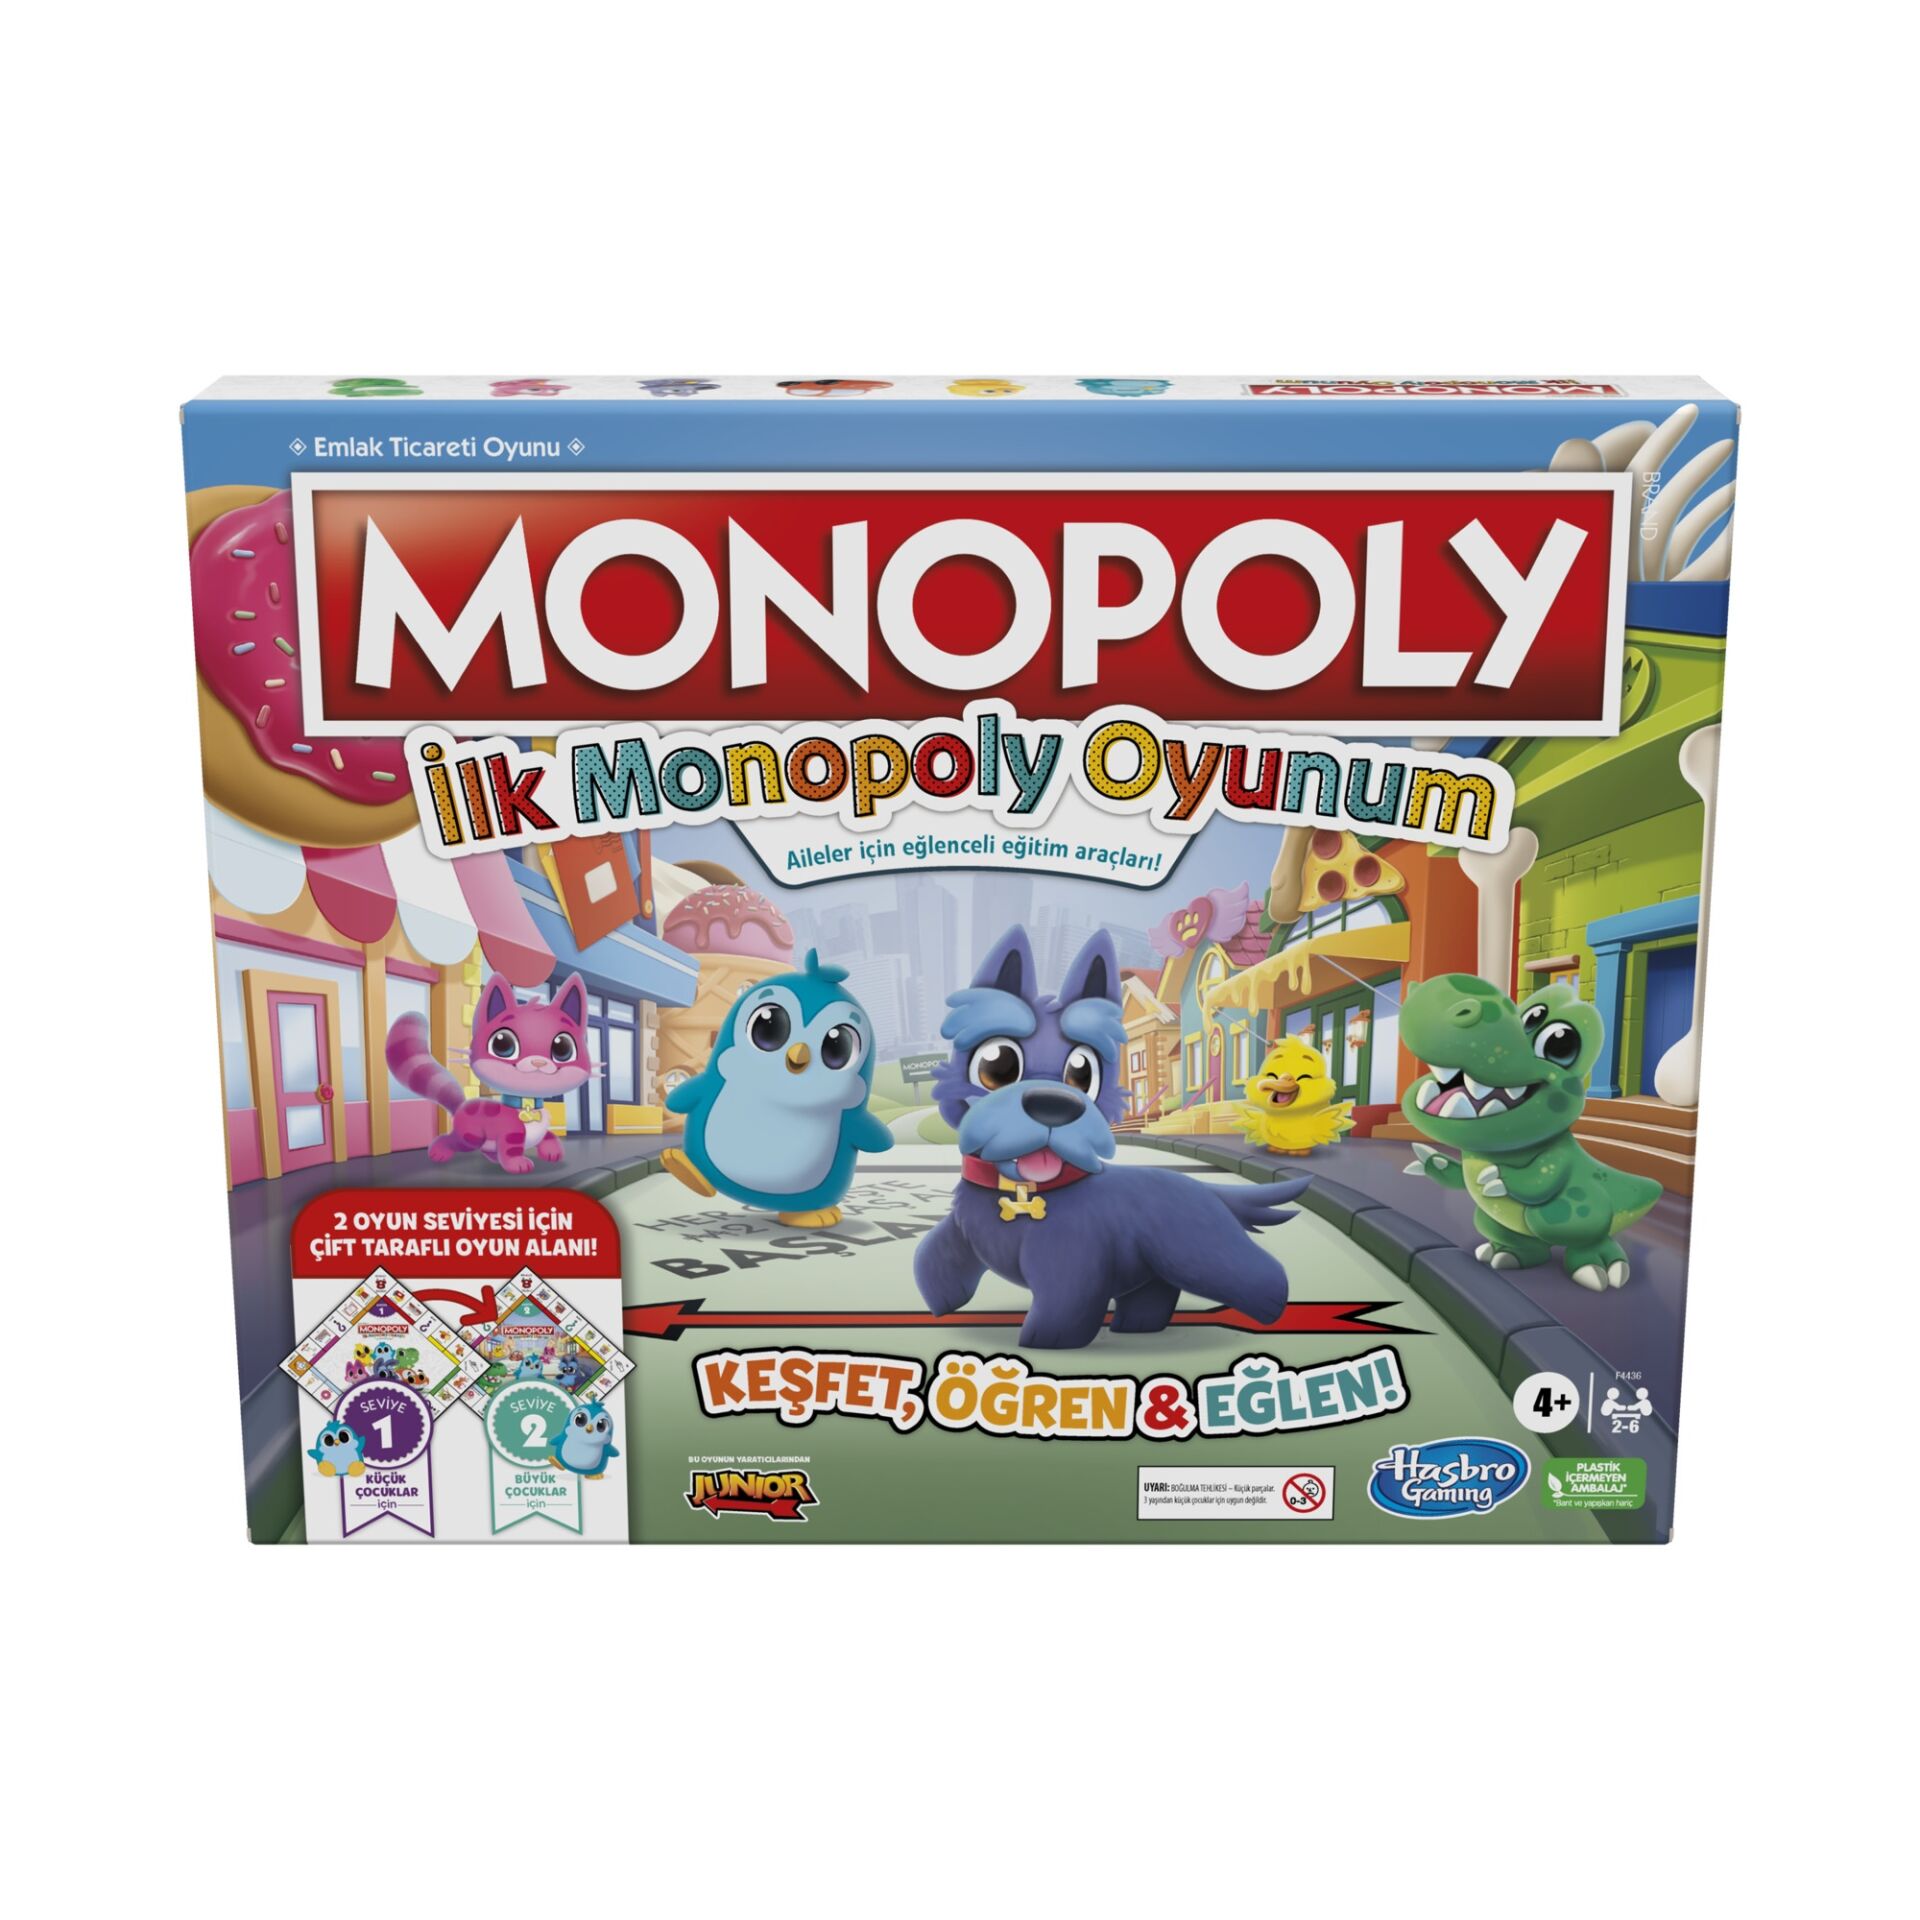 Monopoly İlk Monopoly Oyunum